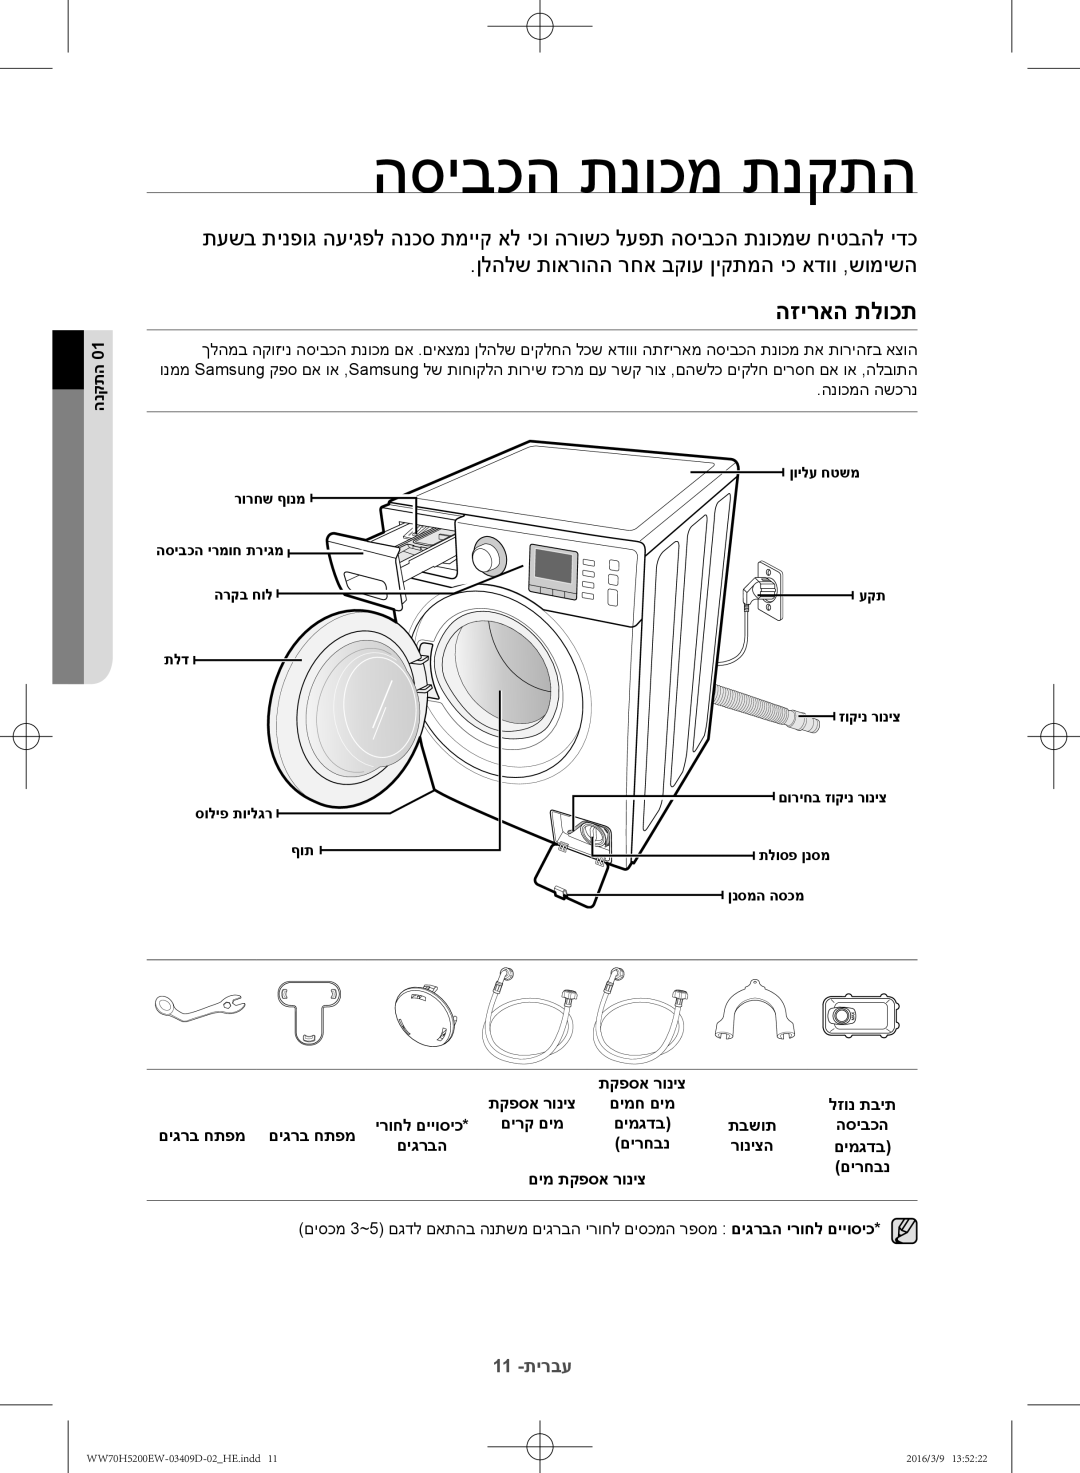 Samsung WW70H5200EW/KJ manual הסיבכה תנוכמ תנקתה, הזיראה תלוכת, הנקתה, םימ תקפסא רוניצ םירחבנ 